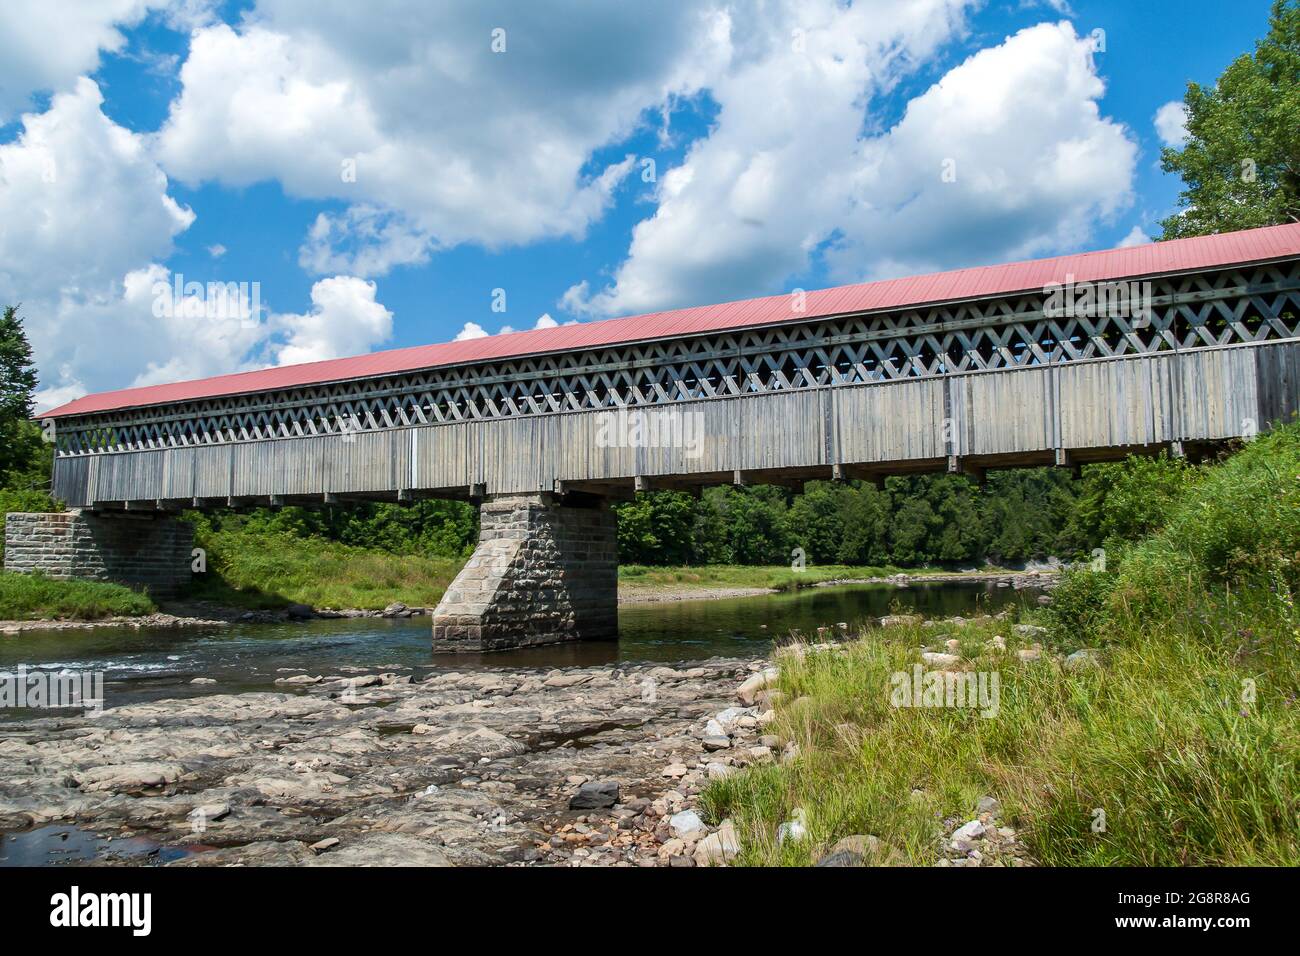 Pont couvert McVetty-McKenzie, Lingwick, Québec, Canada. Construit en 1893 Banque D'Images